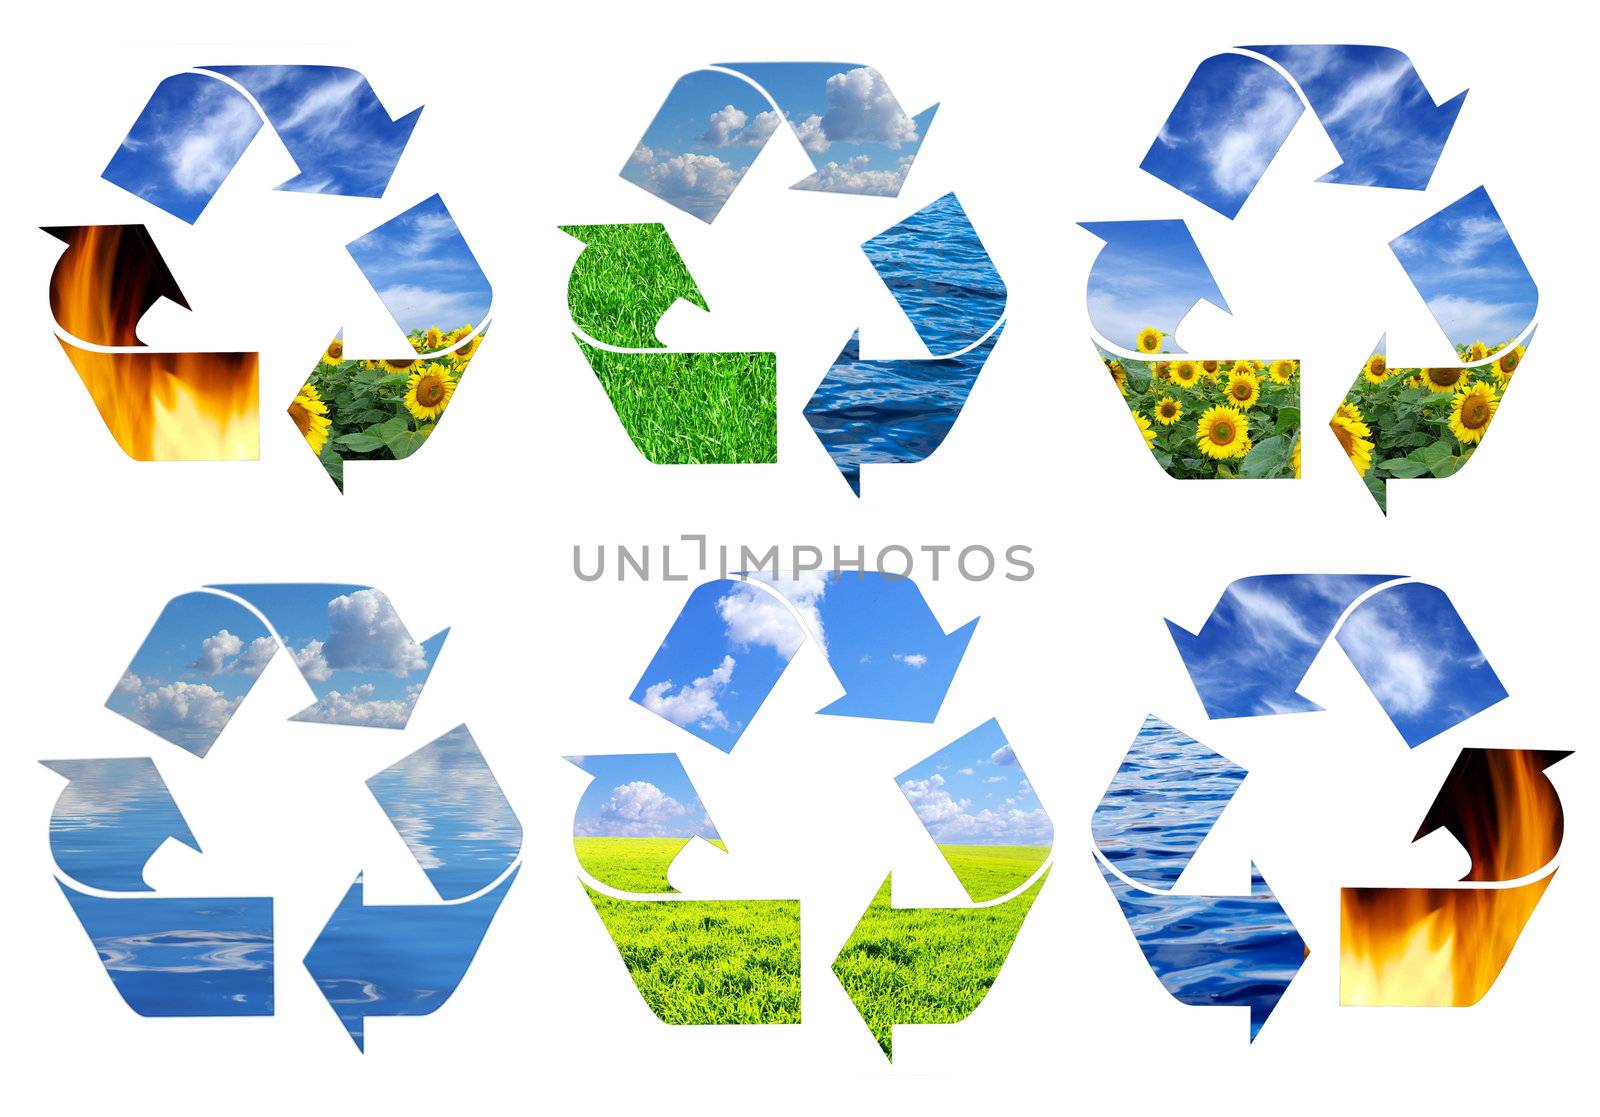  recycling symbol  by Pakhnyushchyy